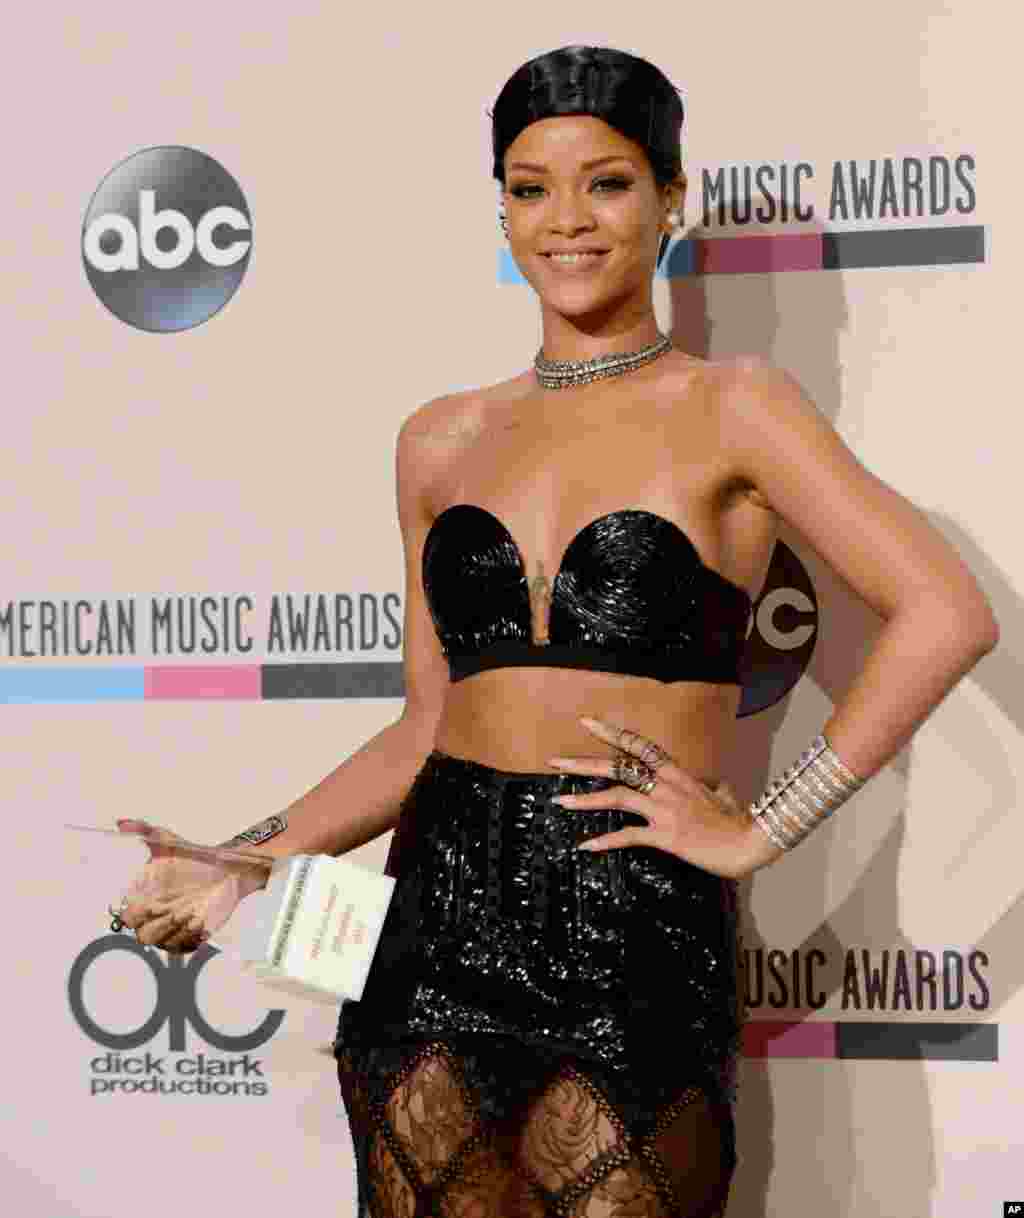 N. 8 - Rihanna Rihanna é provavelmente a personificação perfeita da pop star moderna. A jovem dos Barbados tem apenas 26 anos e os seus hits como &quot;We found Love&quot; ou &quot;Diamonds&quot; tocam nas rádios sem parar, bem como nos clubes nocturnos. Colabora com grandes nomes da música como Eminem ou Jay-Z. Ela também é uma máquina nas redes sociais, melhor do que a maioria das celebridades. Ela interage através dio Twitter e Instagram como ninguém, tão transparente que os fãs adoram. Rihanna é a segunda pessoa mais poderosa nas redes sociais, a seguir a Justin Bieber, segundo a lista da FORBES.